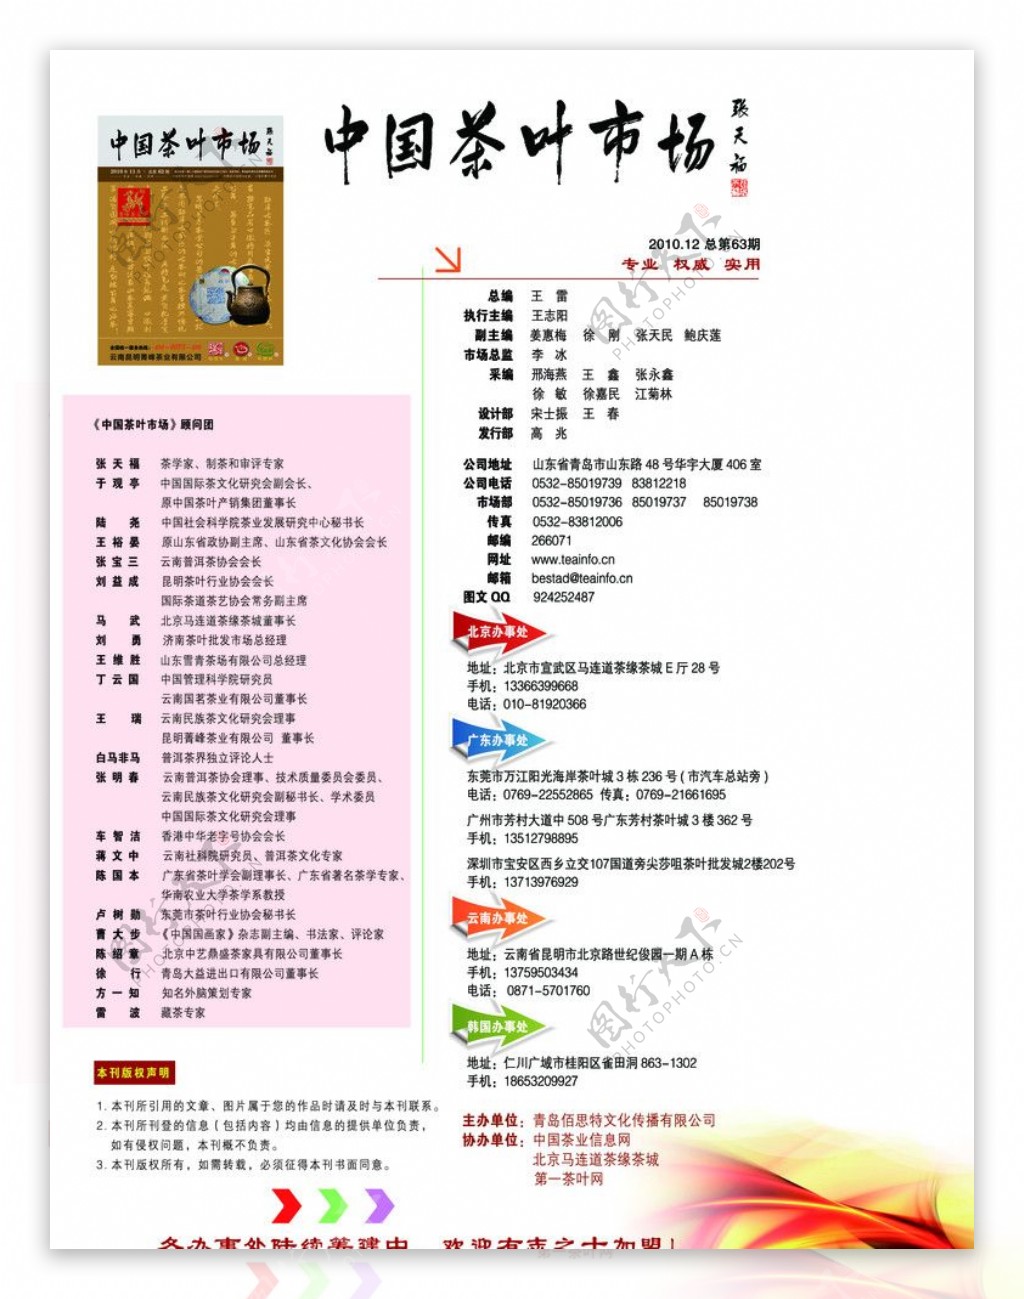 茶杂志版权页图片